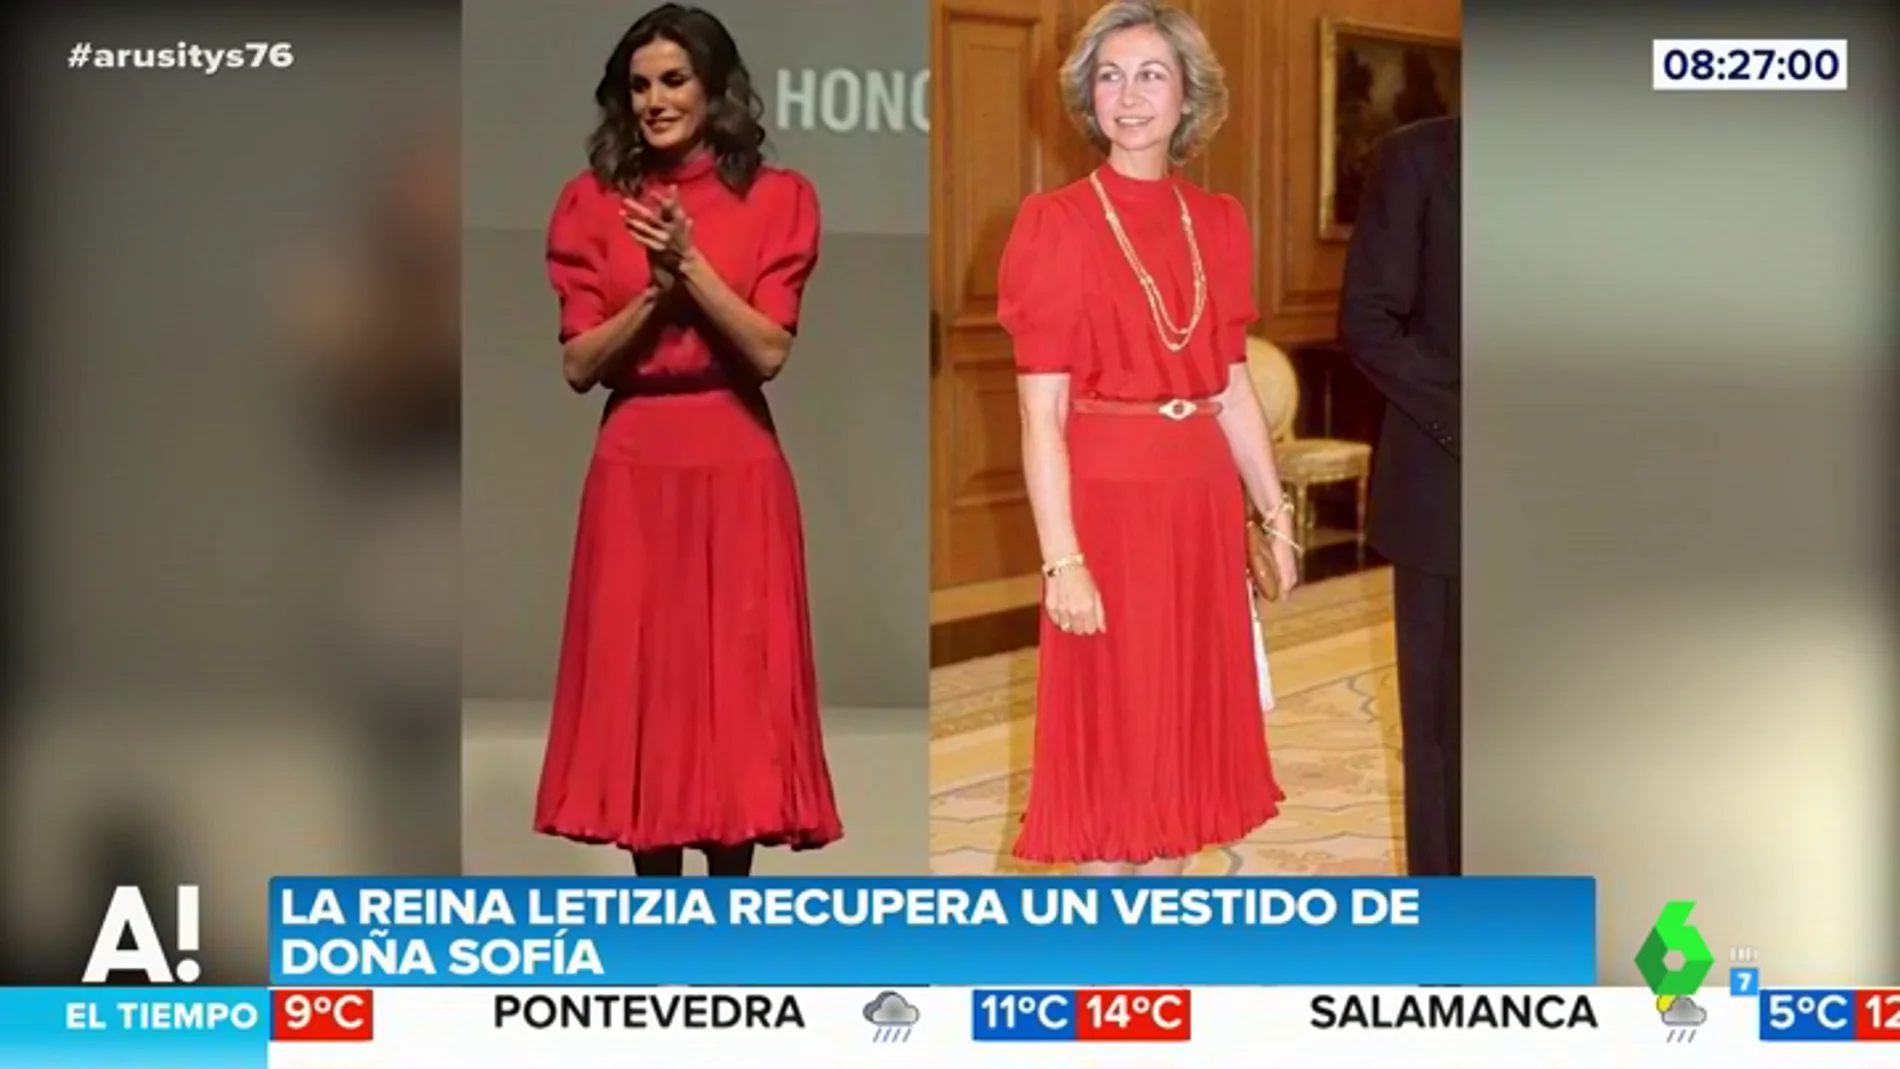 El bonito guiño de la reina Letizia a la reina Sofía al 'reciclar' el vestido que lució hace más de 30 años